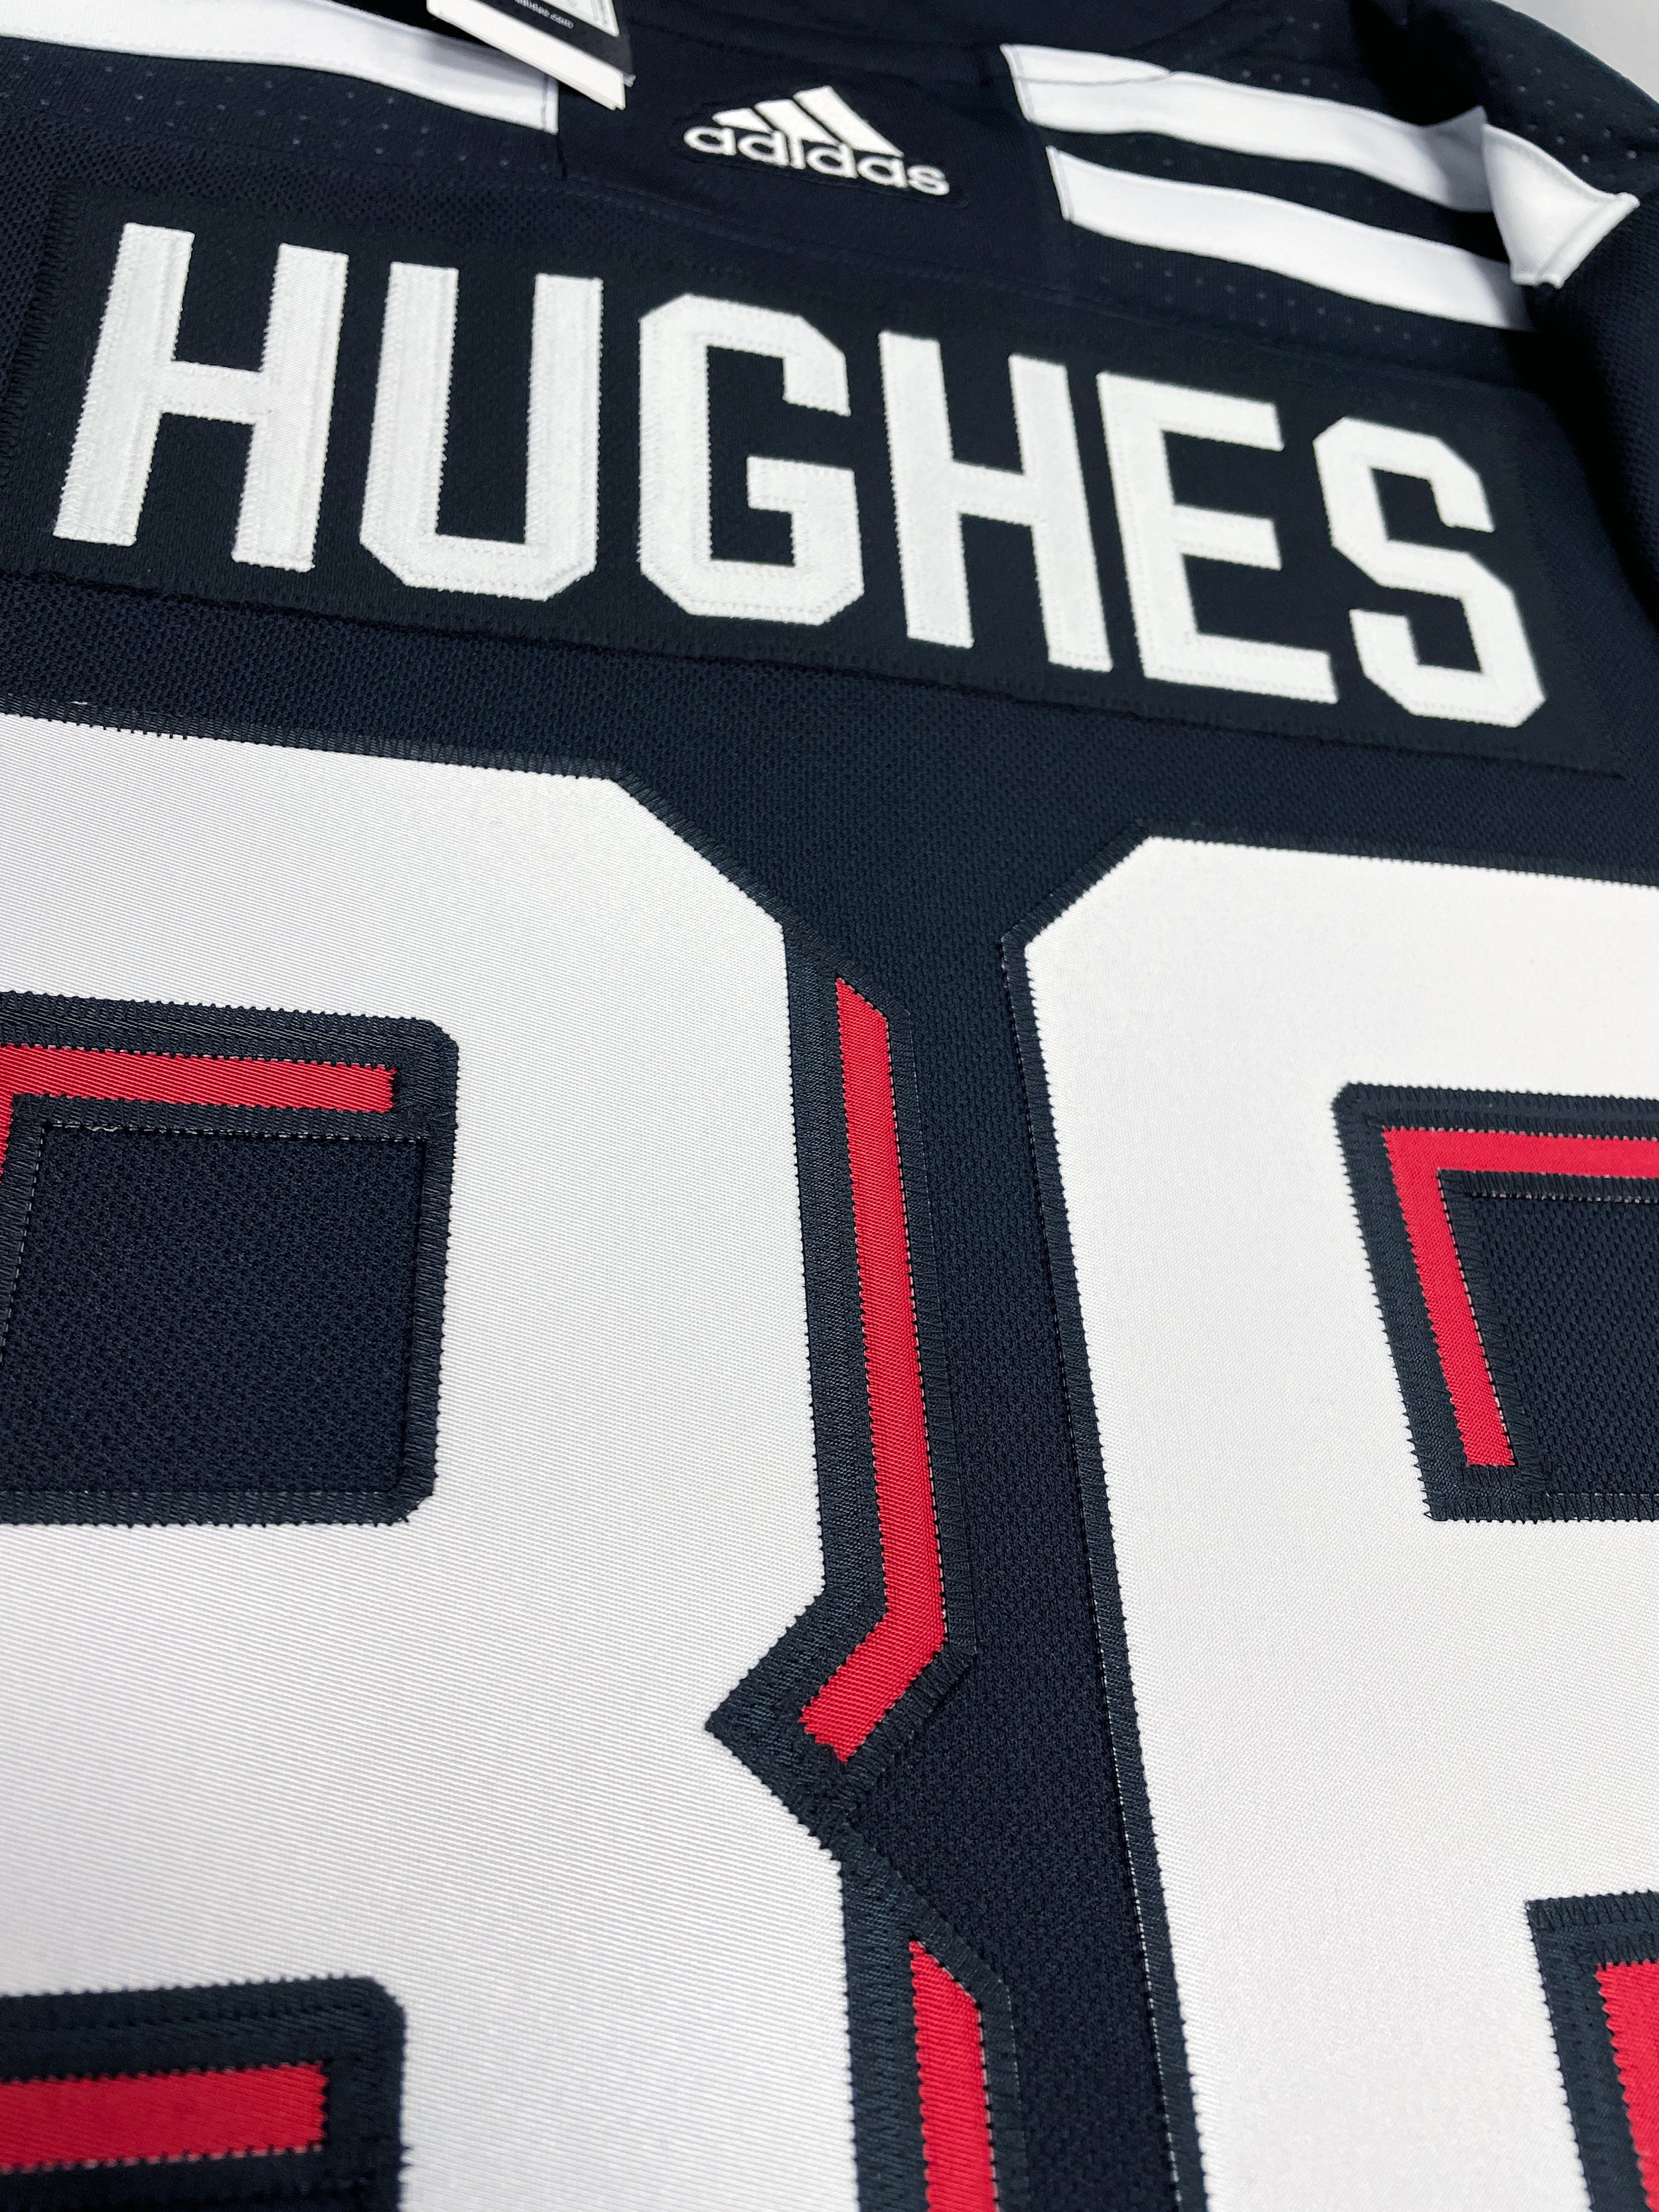 Men's New Jersey Devils Jack Hughes adidas Green 2020/21 Reverse